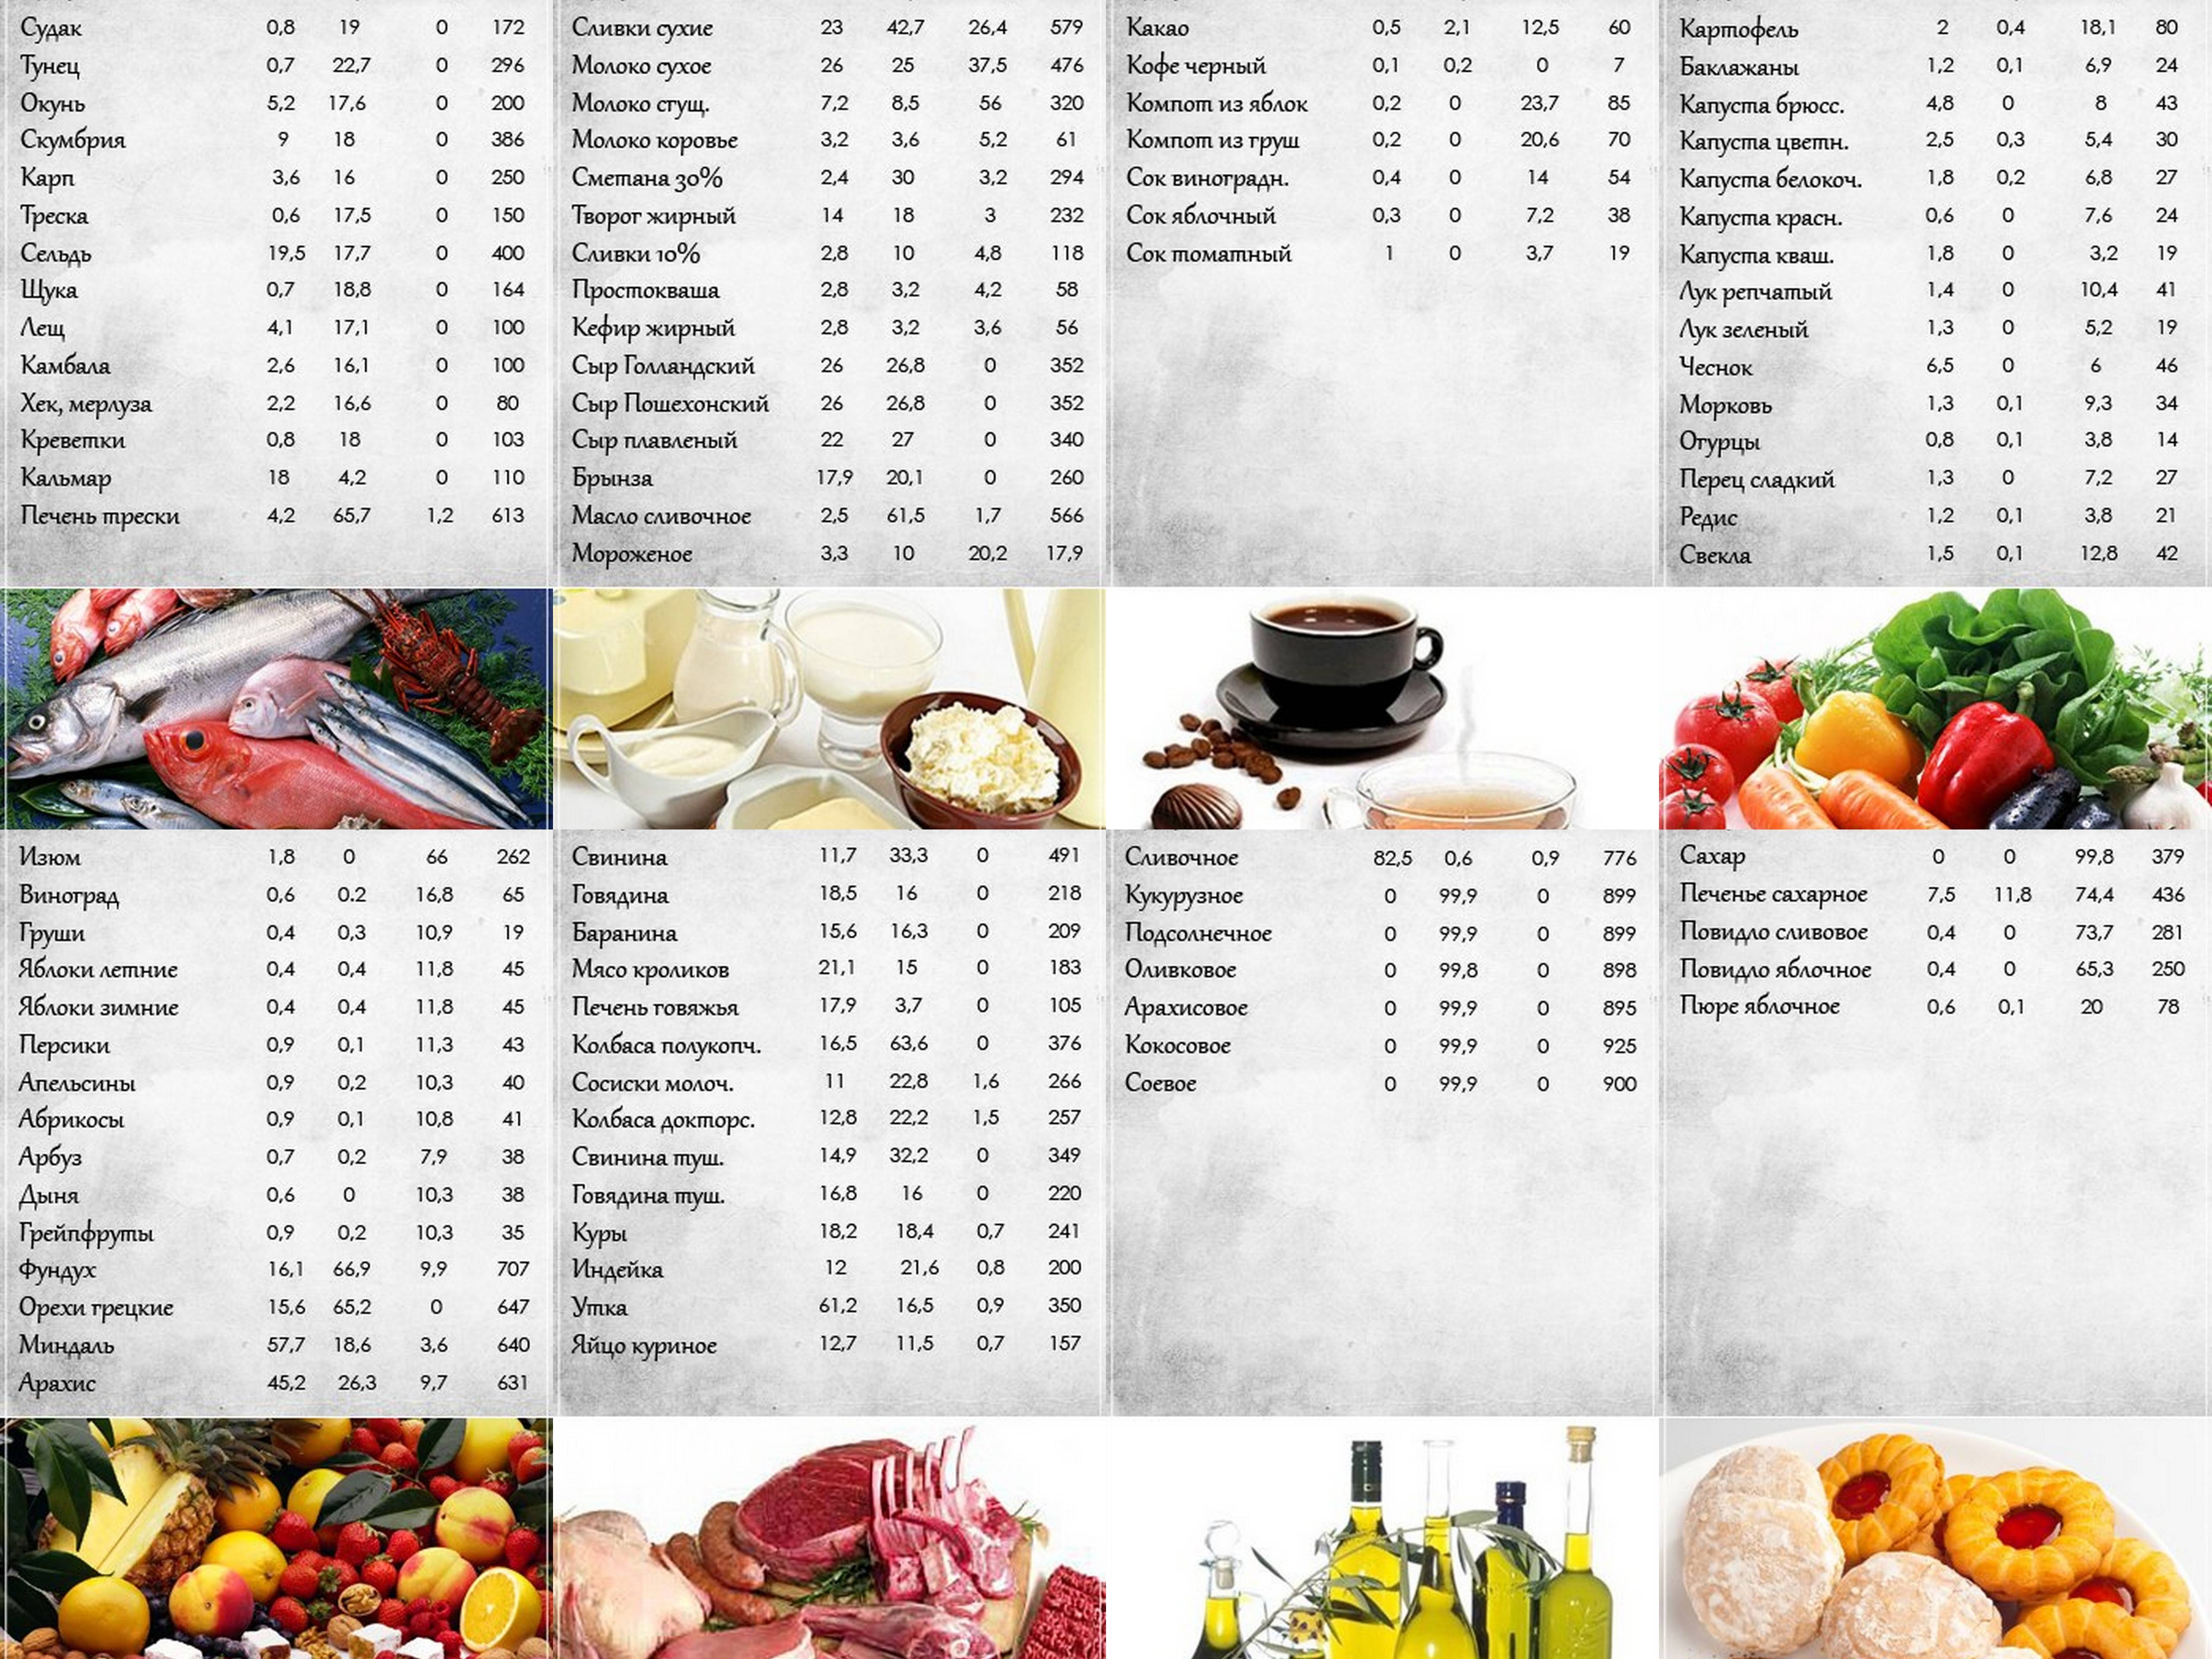 Таблица калорийности готовых блюд и продуктов для похудения на 100 грамм: как правильно рассчитать калорийность готового блюда по ингредиентам, коридор калорийности по борменталю и скачать полную таблицу калорийности готовых блюд бесплатно